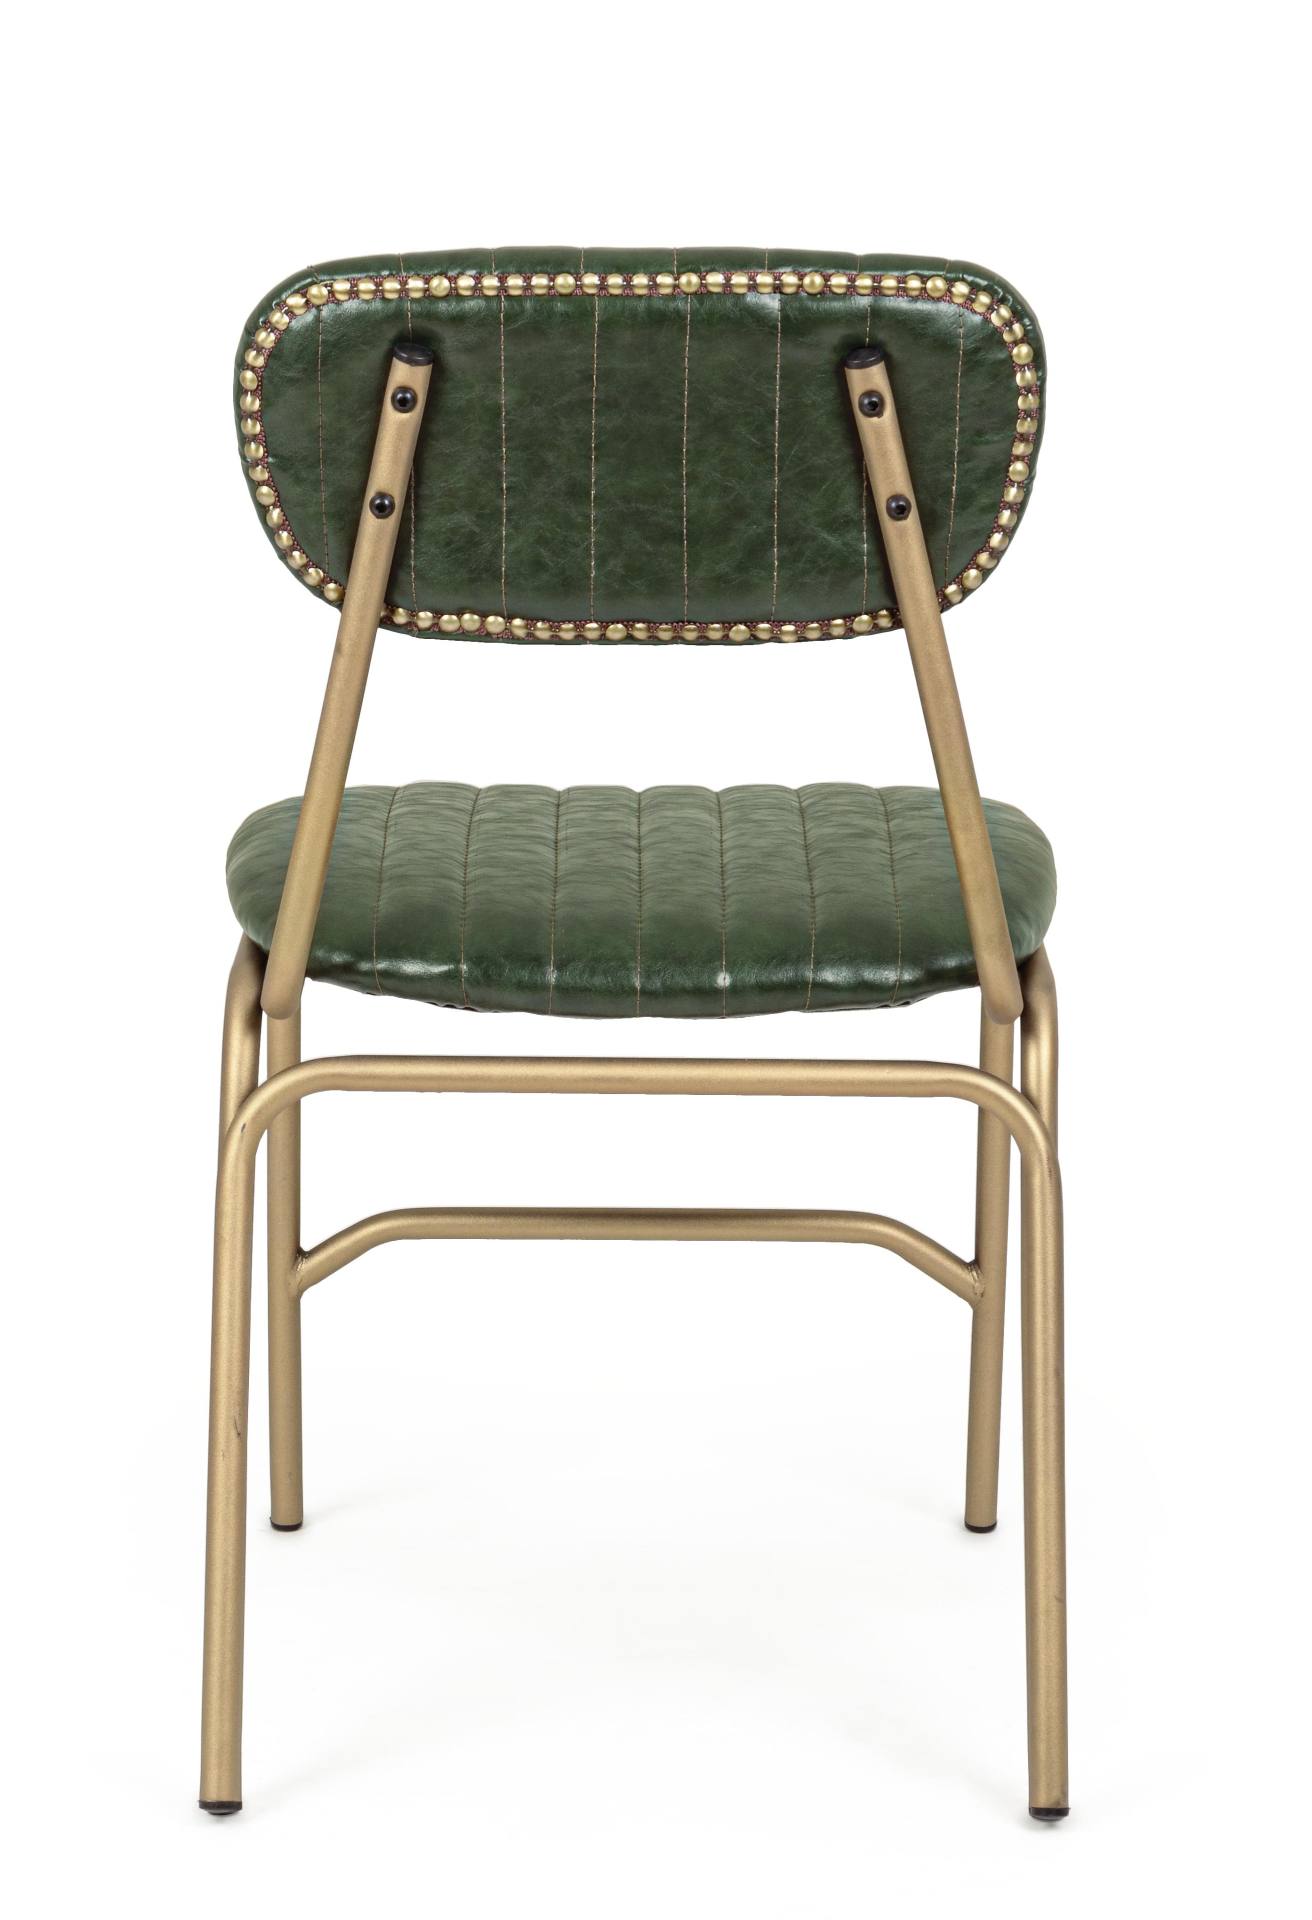 Der Stuhl Addy überzeugt mit seinem industriellen Design. Gefertigt wurde der Stuhl aus Kunstleder, welches einen grünen Farbton besitzt. Das Gestell ist aus Metall und ist Gold. Die Sitzhöhe beträgt 46 cm.